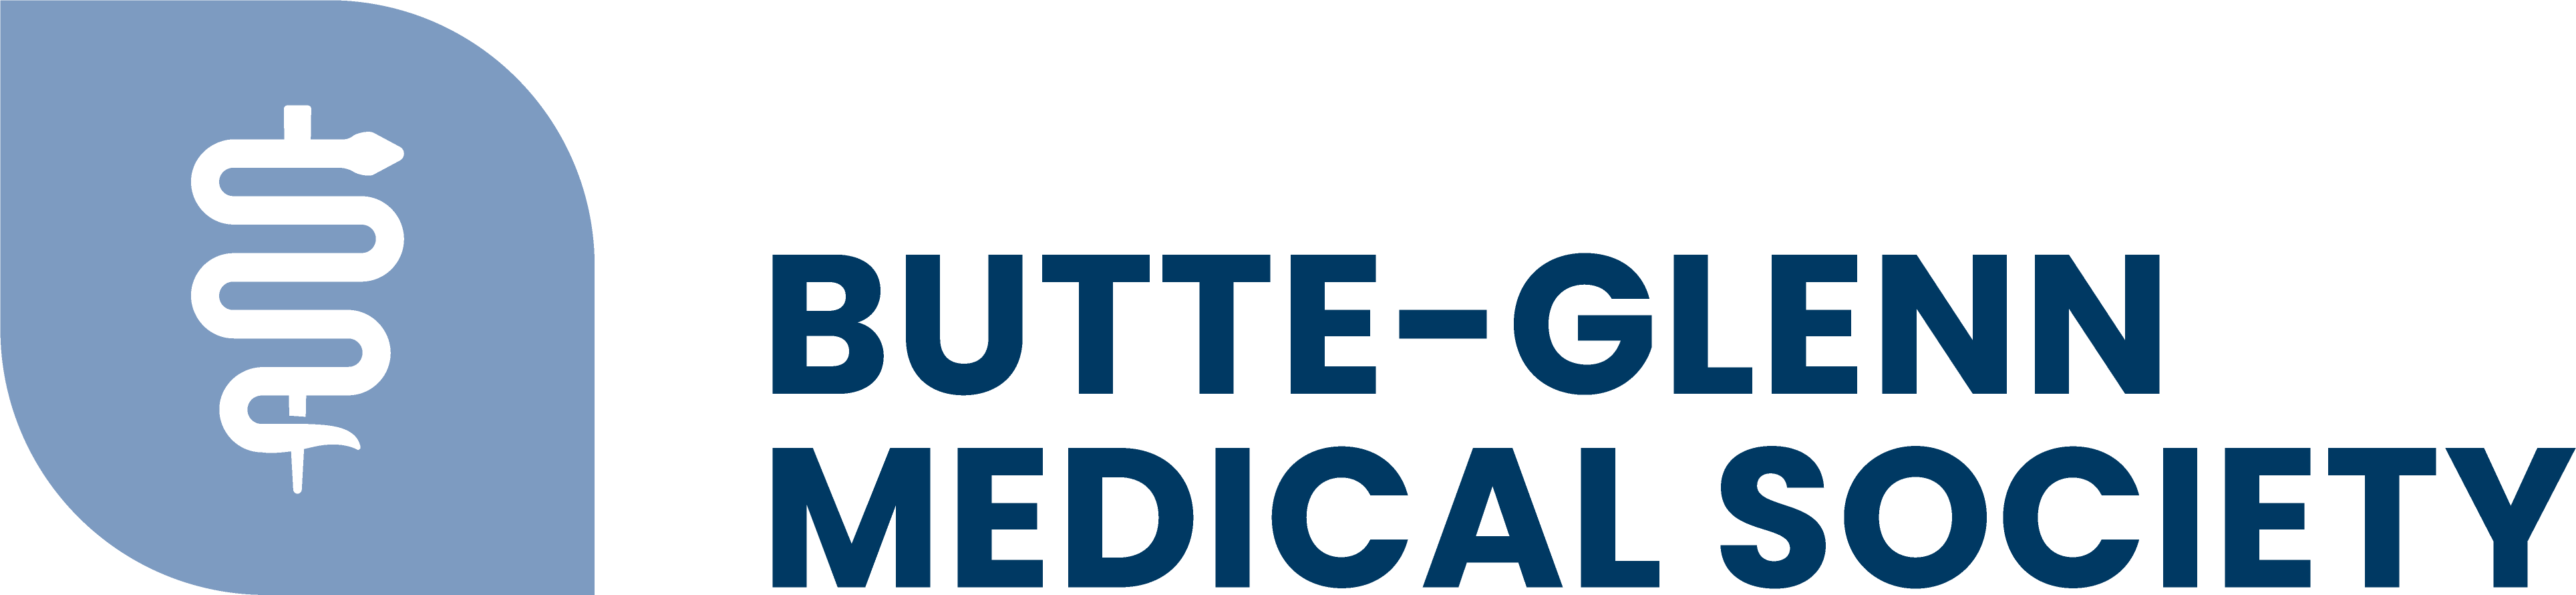 Butte Glenn Medical Society